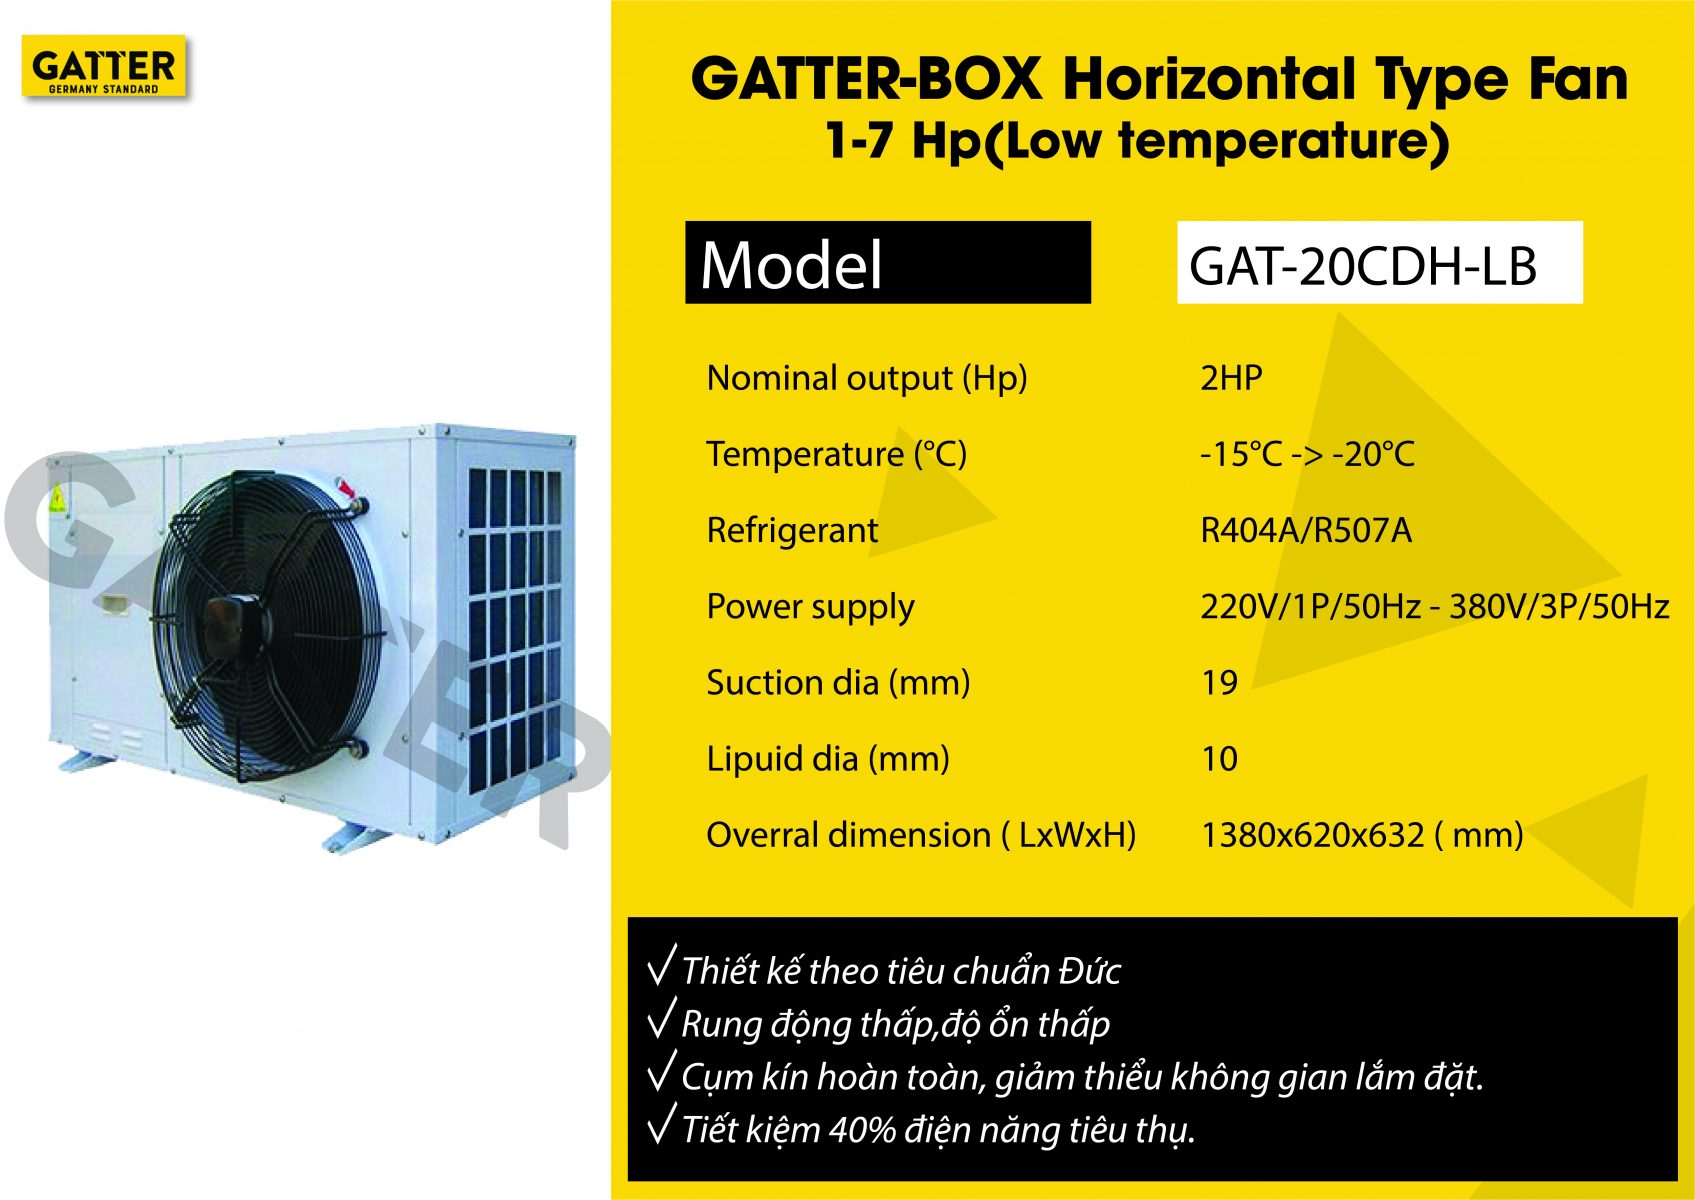 Cụm Gatter-box GAT-20CDH-LB